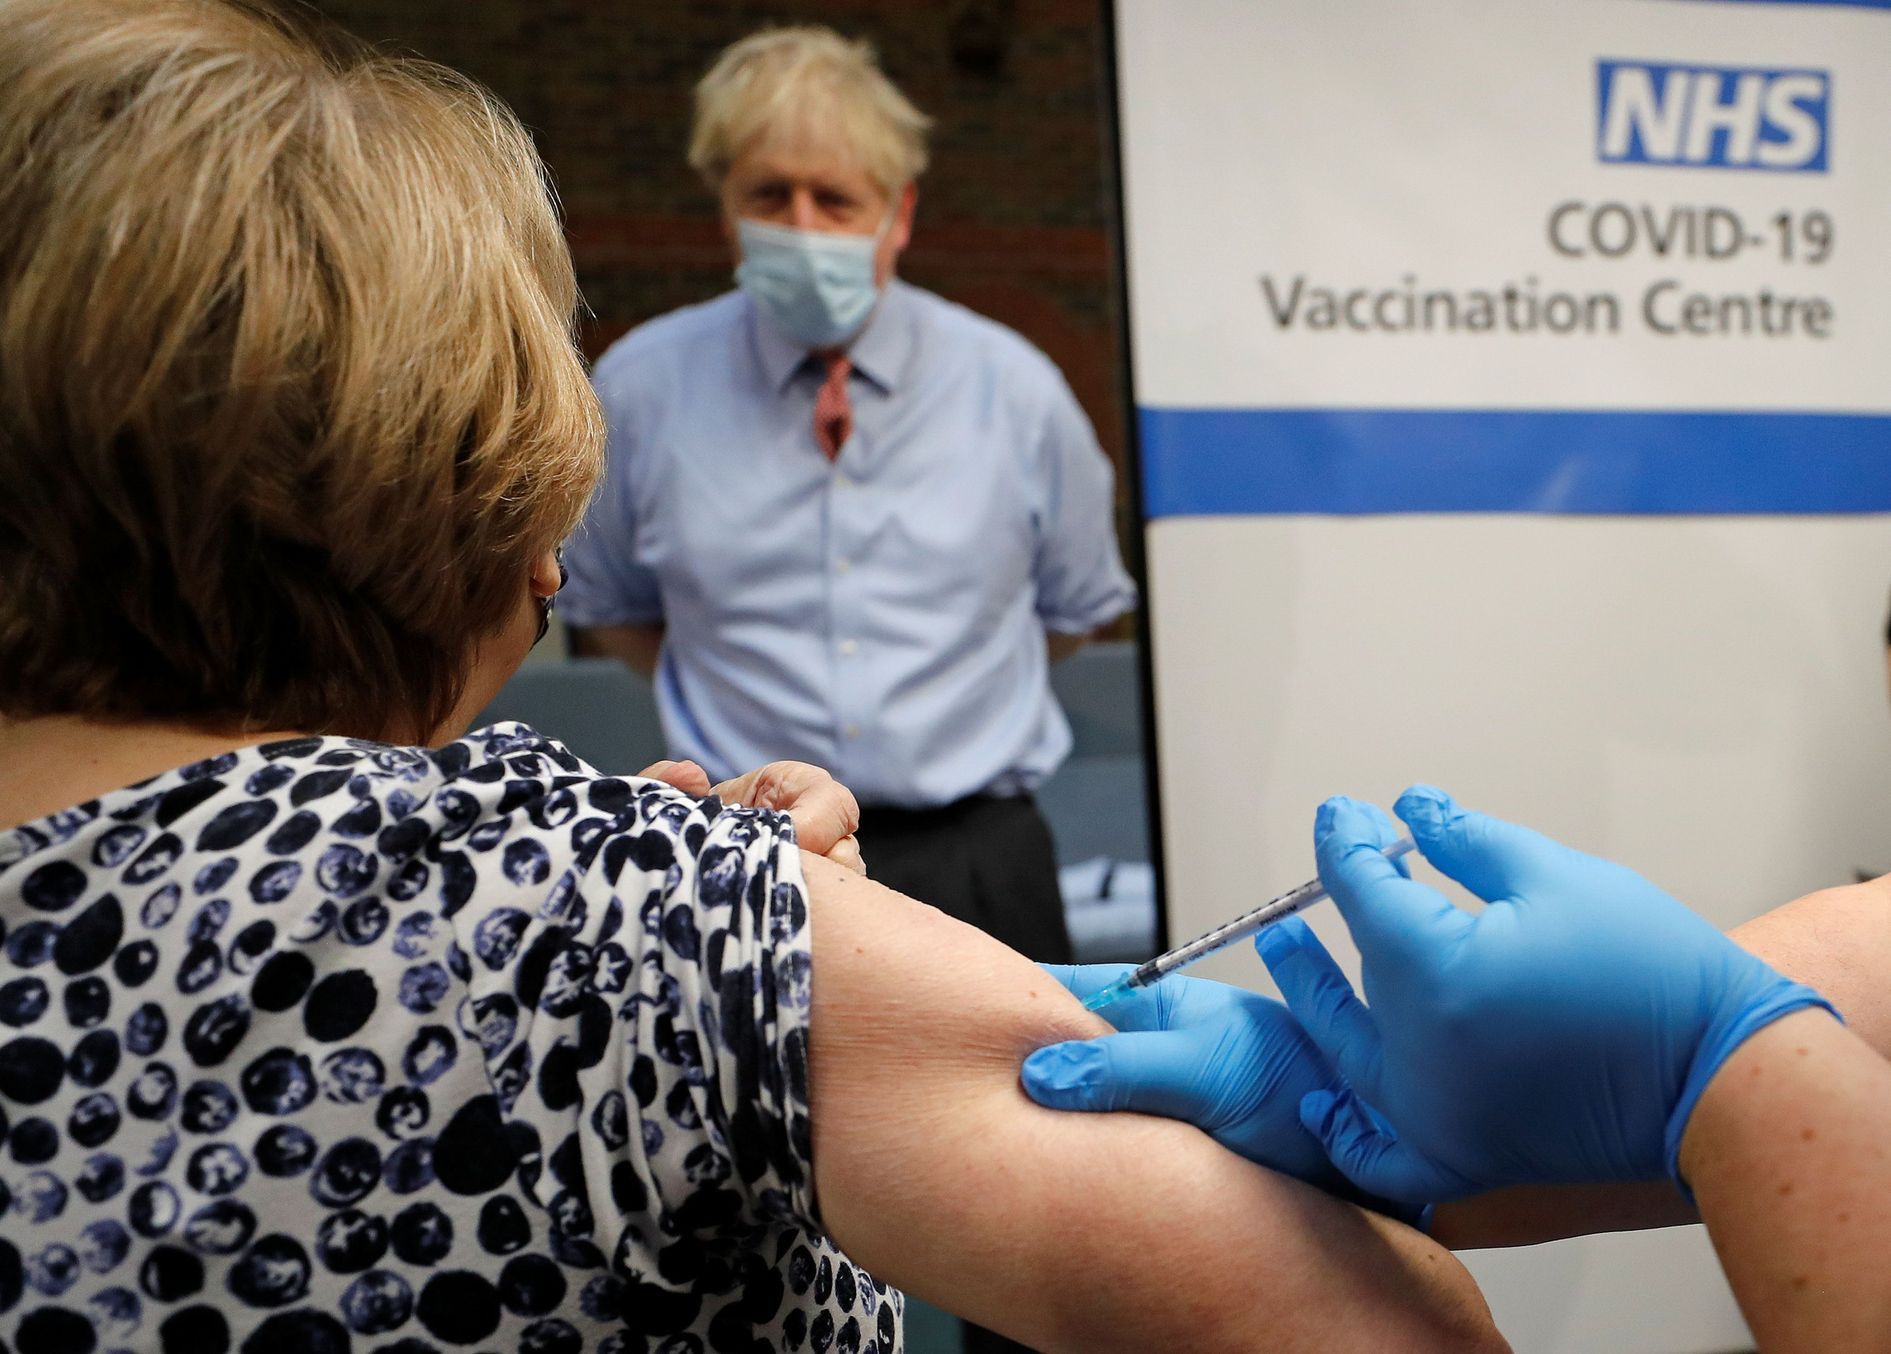 očkování, koronavirus, velká británie, UK, pfizer, vakcína, covid